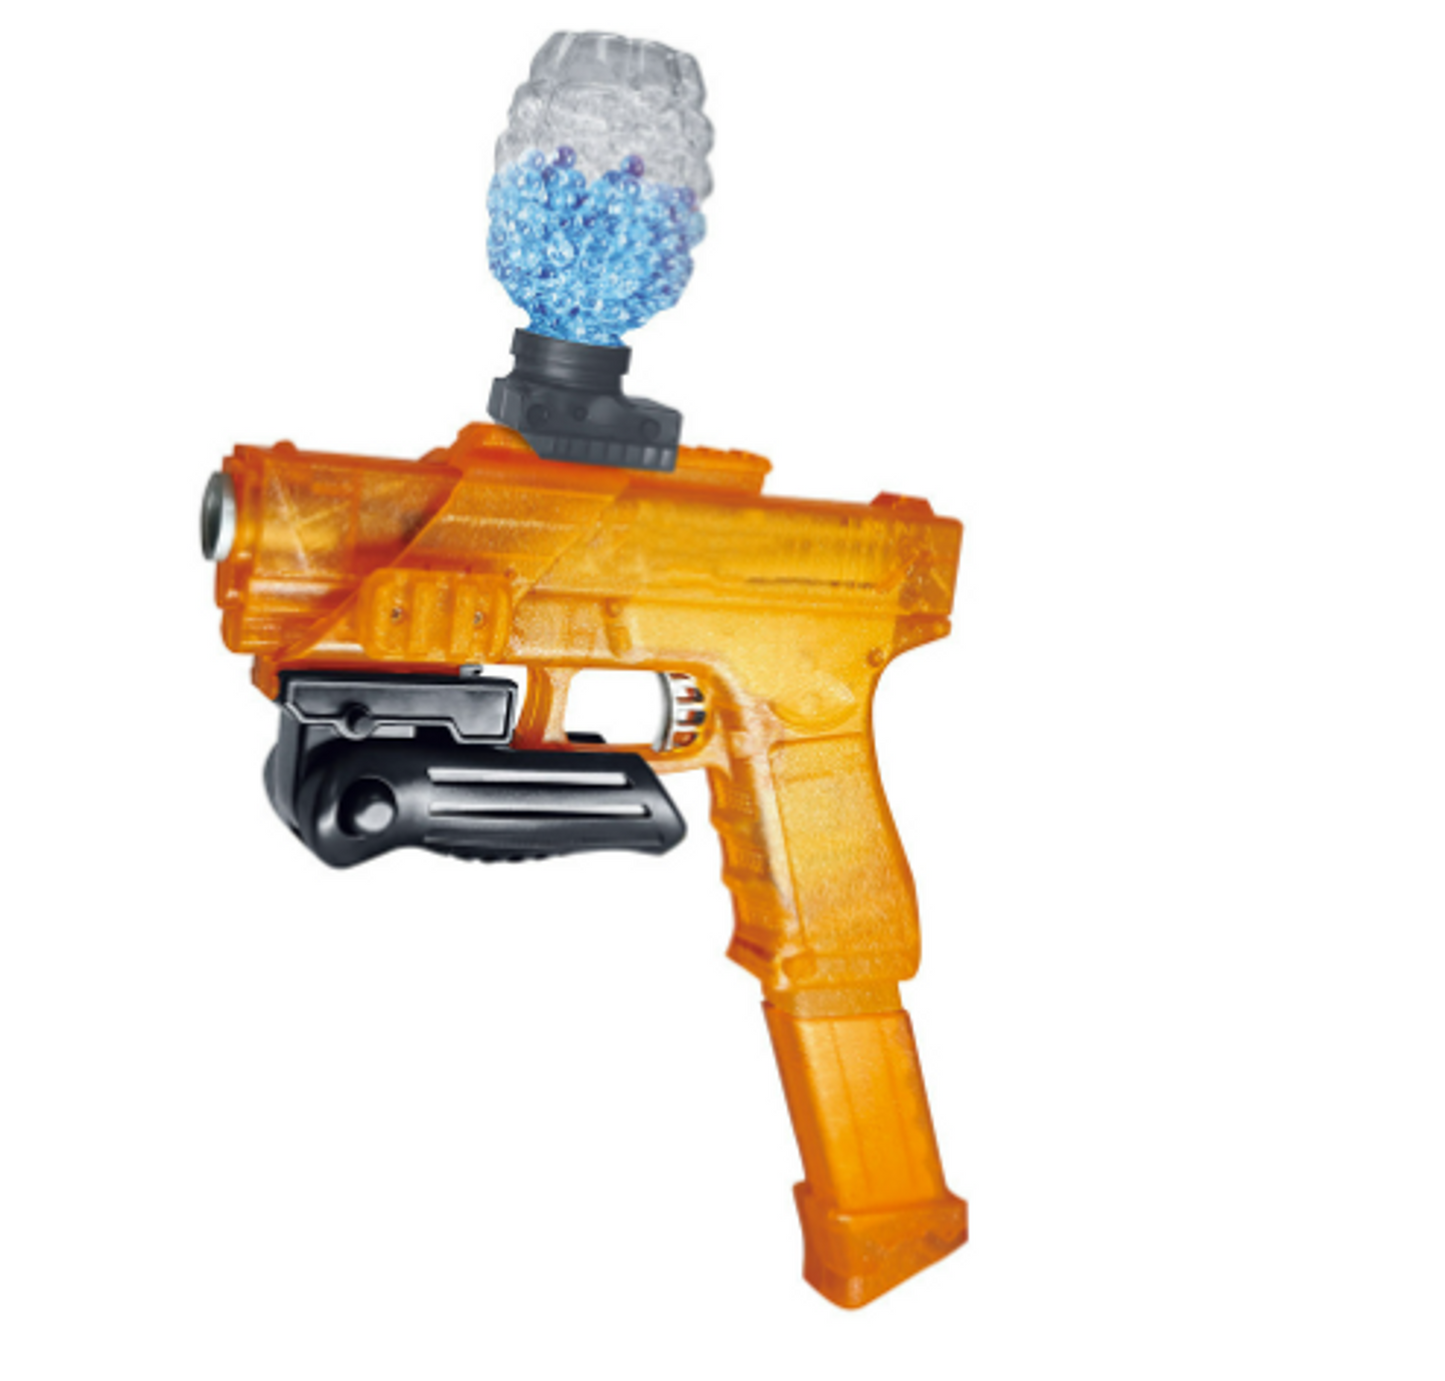 Submachine Water Blaster Toy Gun